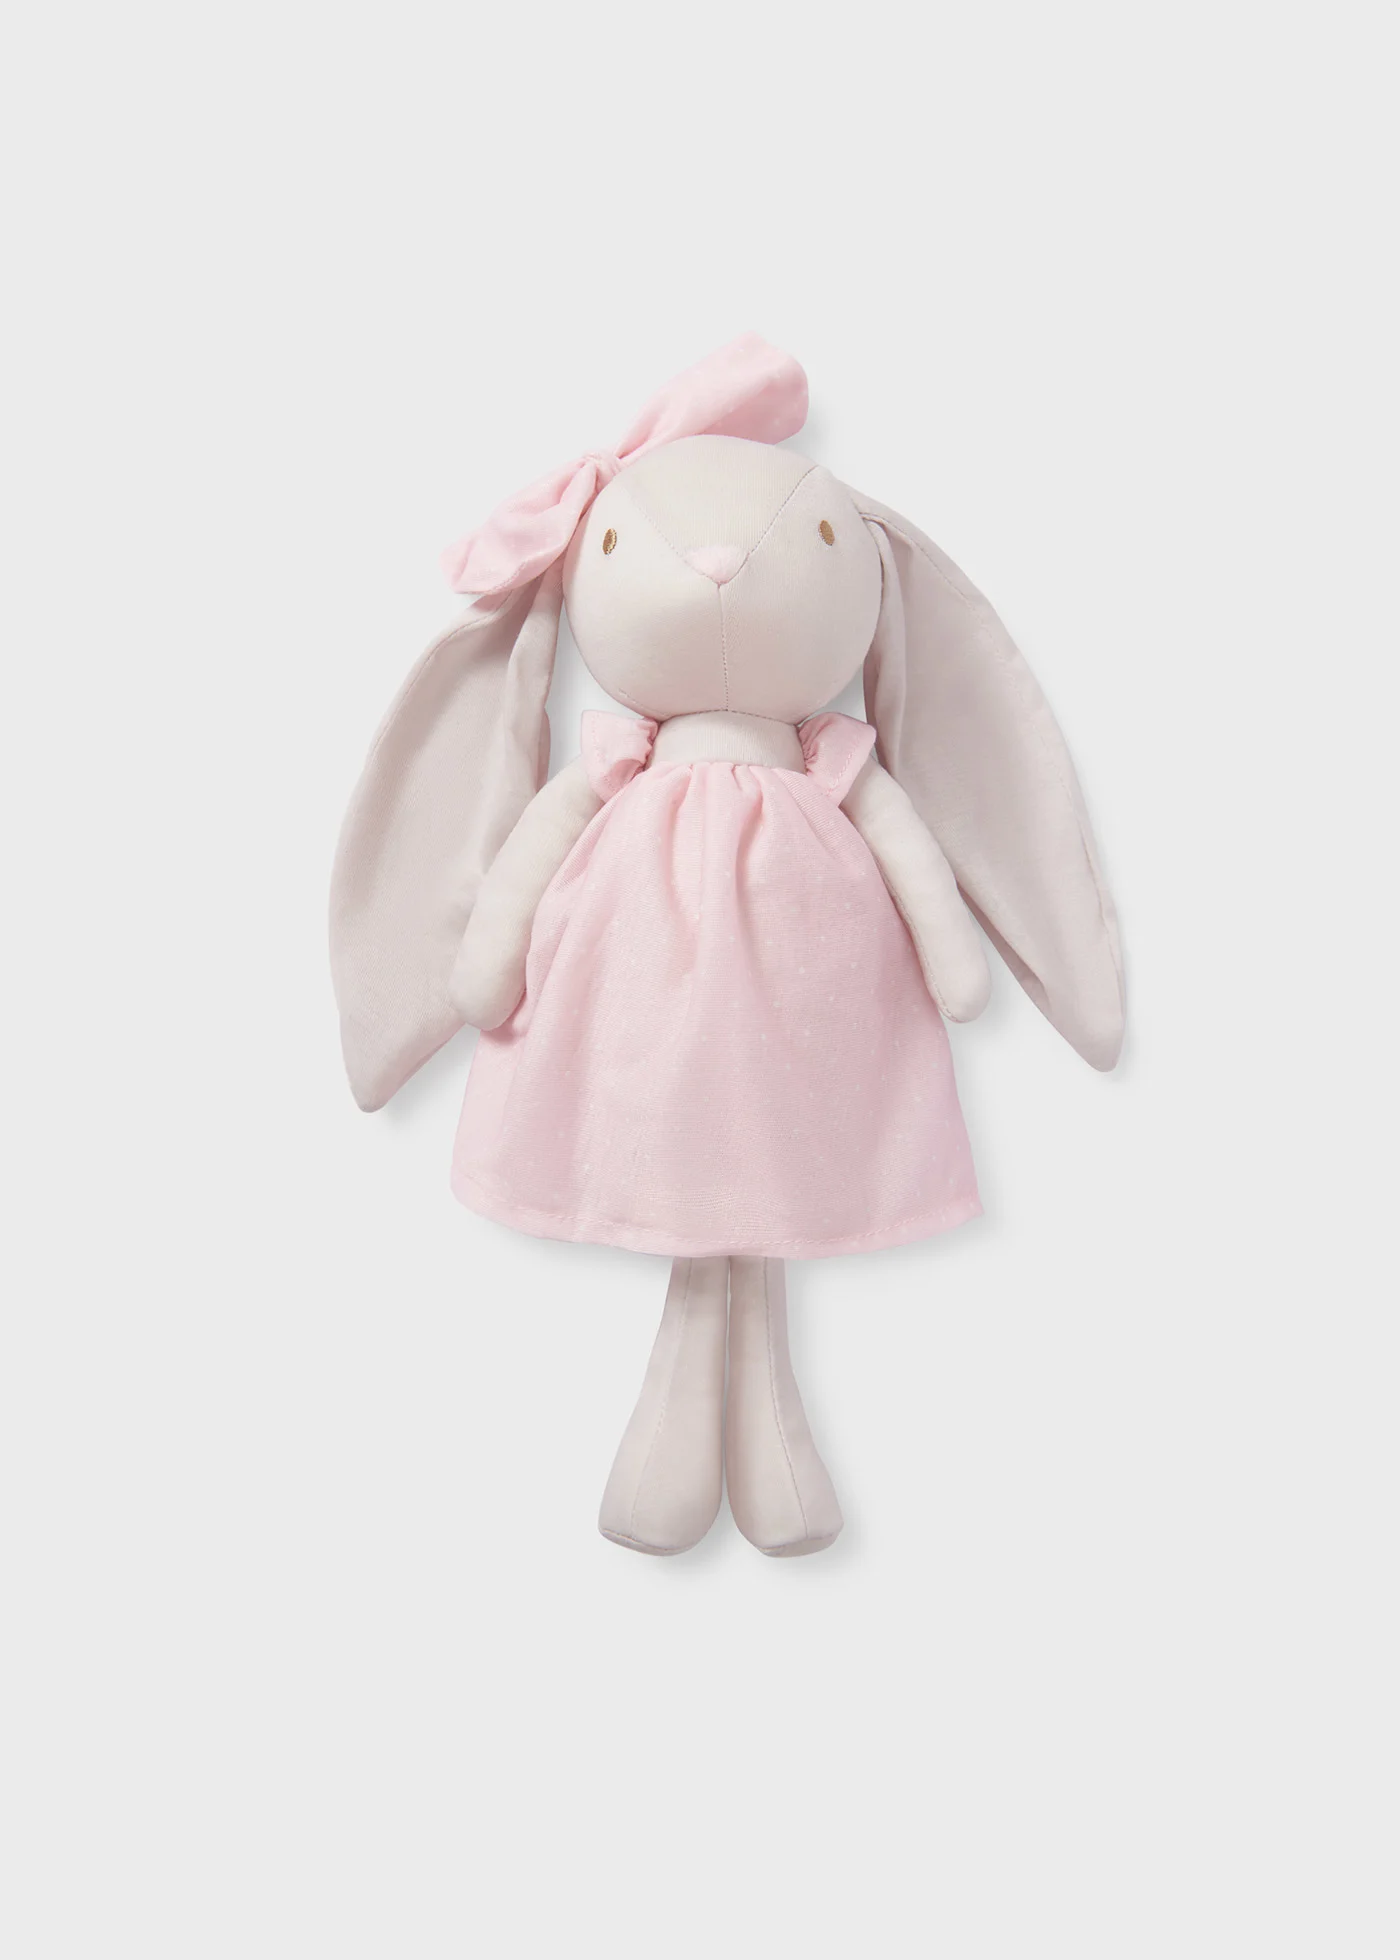 Mayoral Soft Toy Rabbit 19344 - Rosy